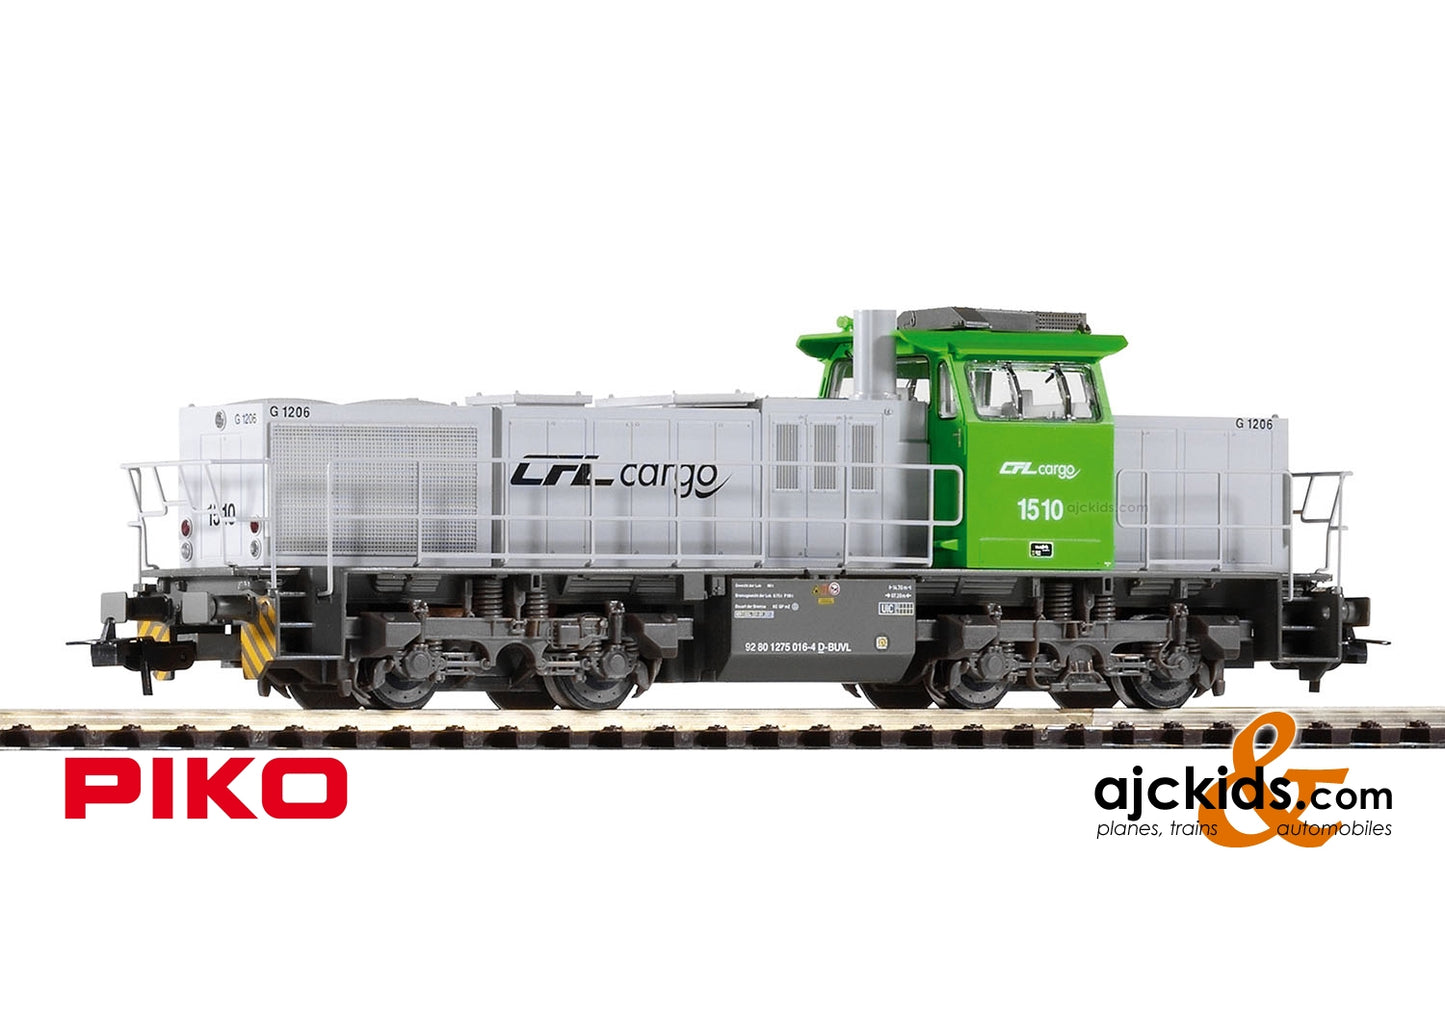 Piko 59923 - G 1206 Diesel Locomotive CFL Cargo VI